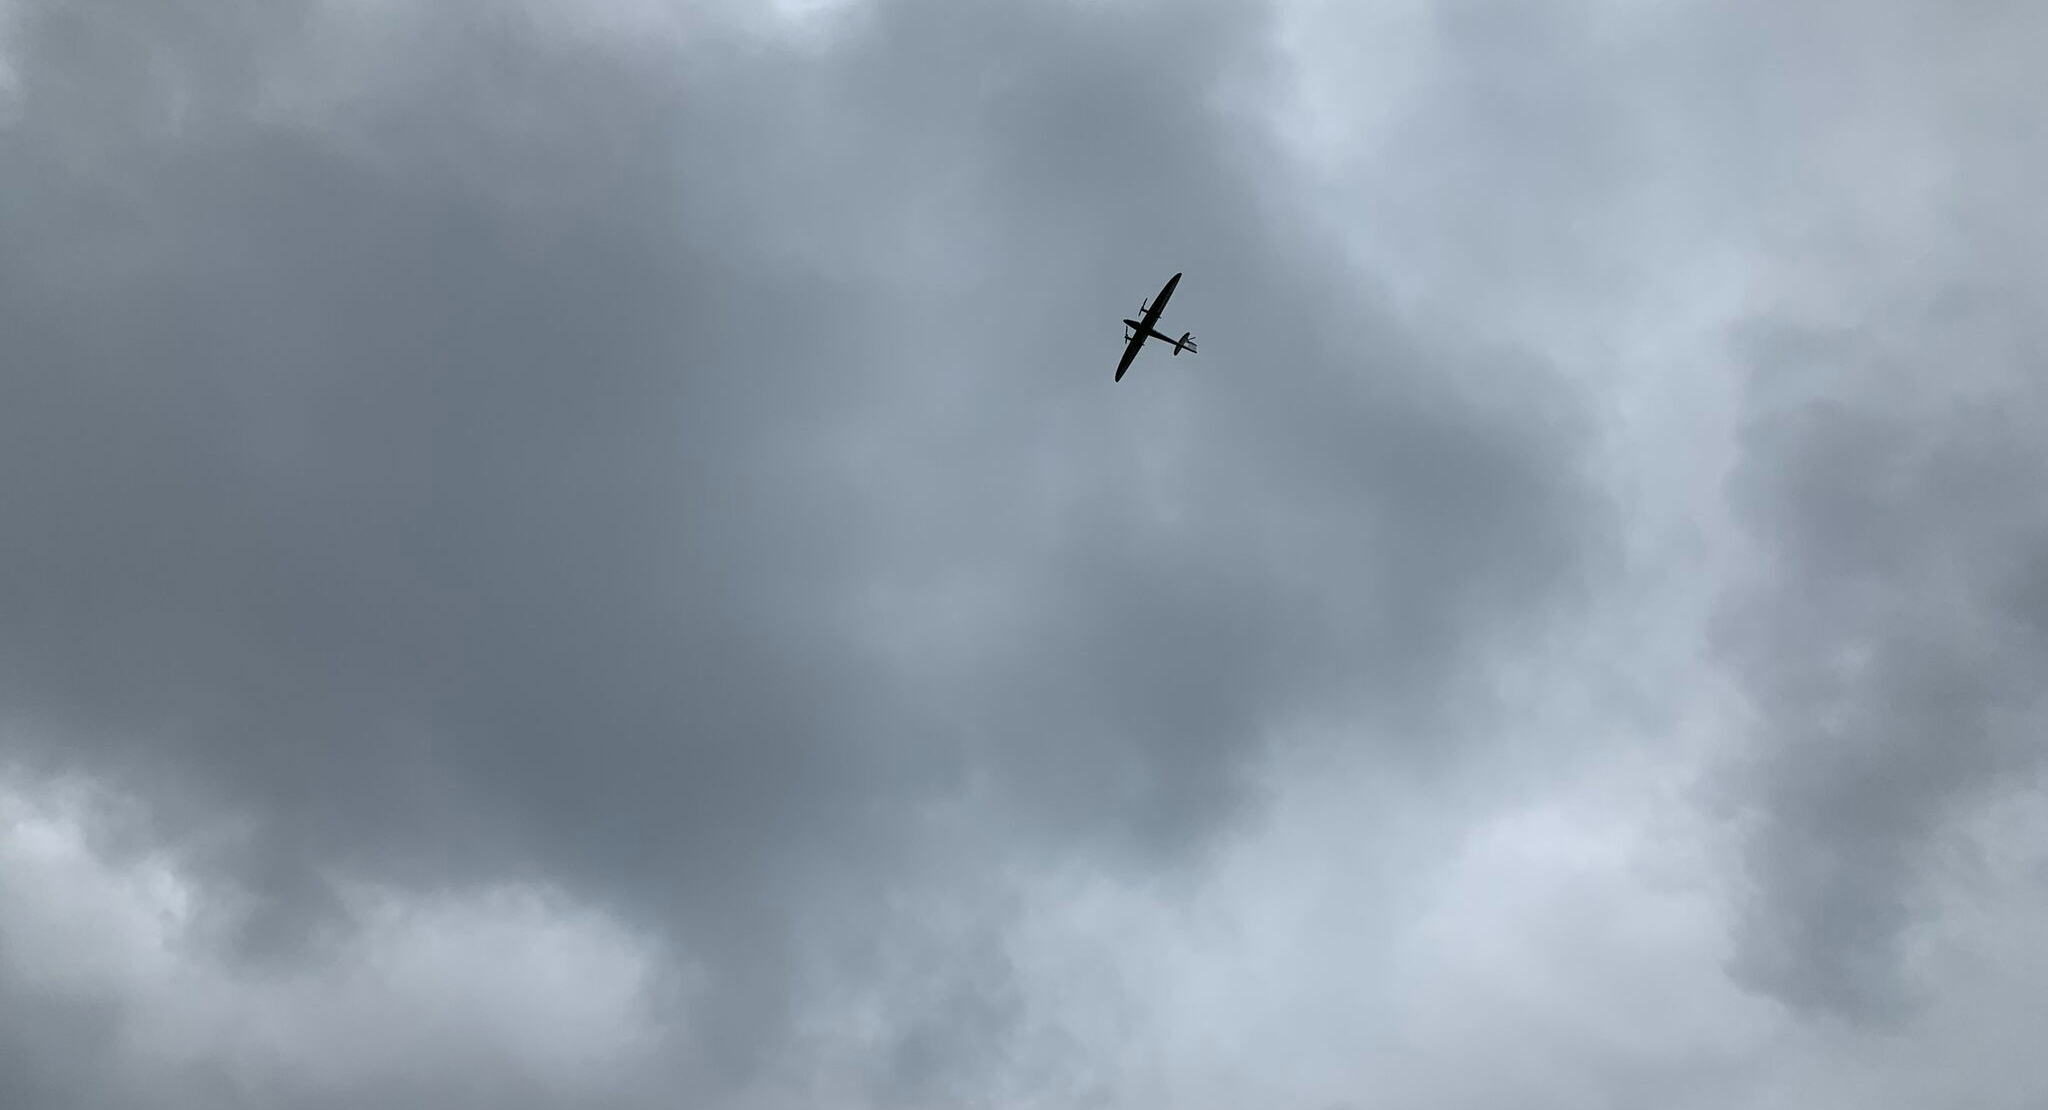 Fixed-wing UAV